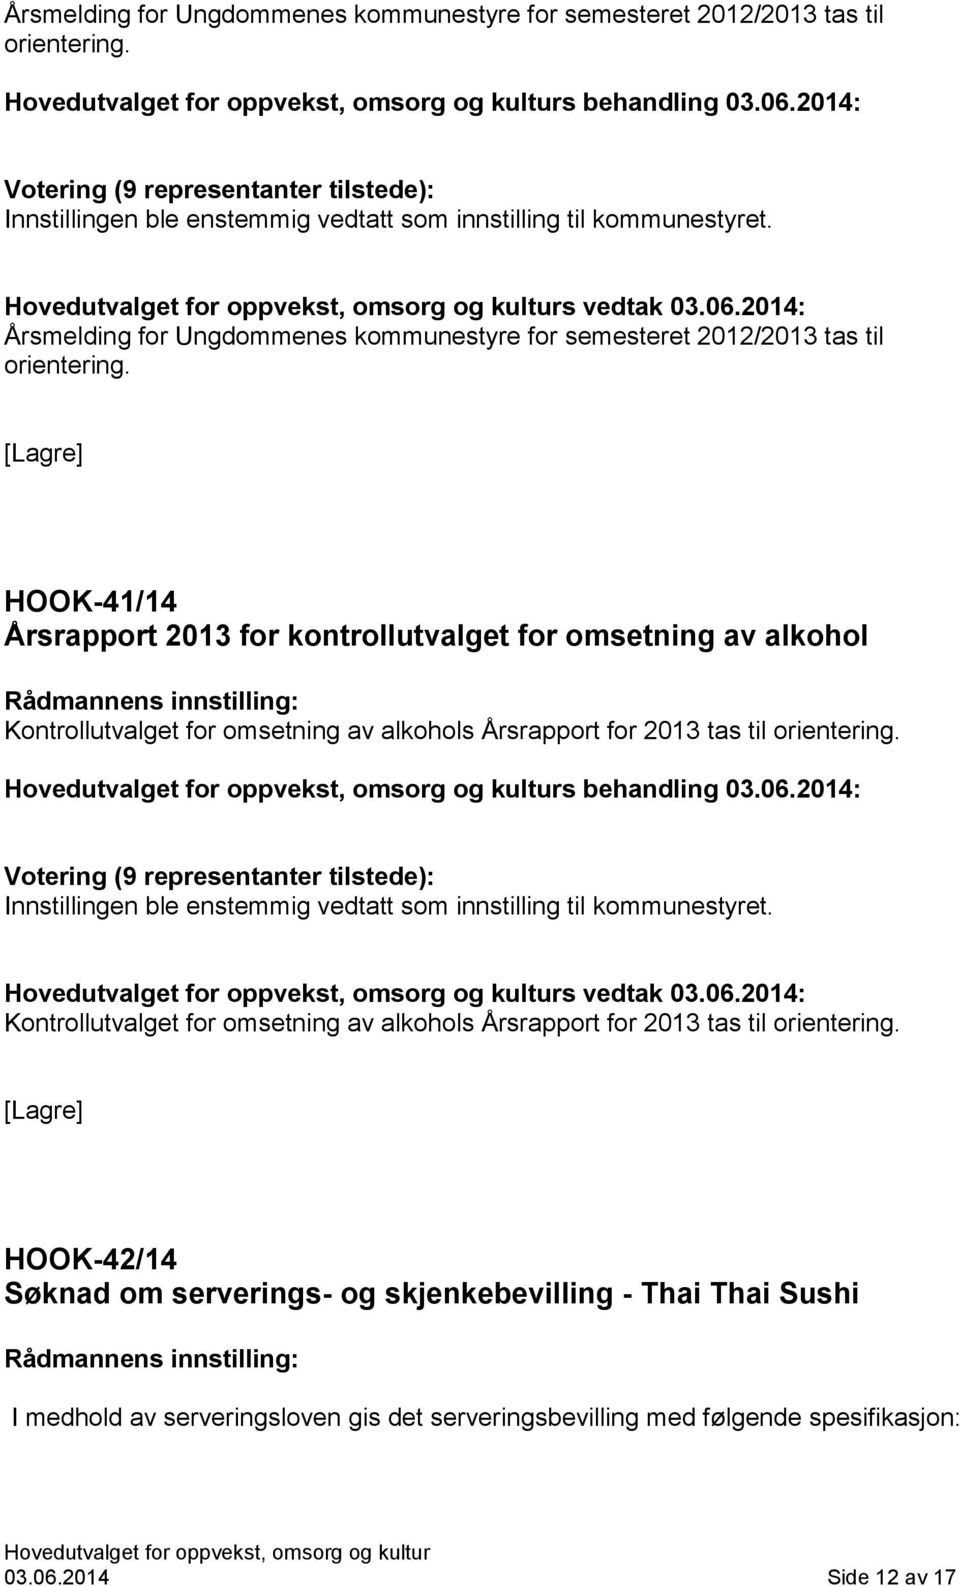 2014: Innstillingen ble enstemmig vedtatt som innstilling til kommunestyret. s vedtak 03.06.2014: Kontrollutvalget for omsetning av alkohols Årsrapport for 2013 tas til orientering.